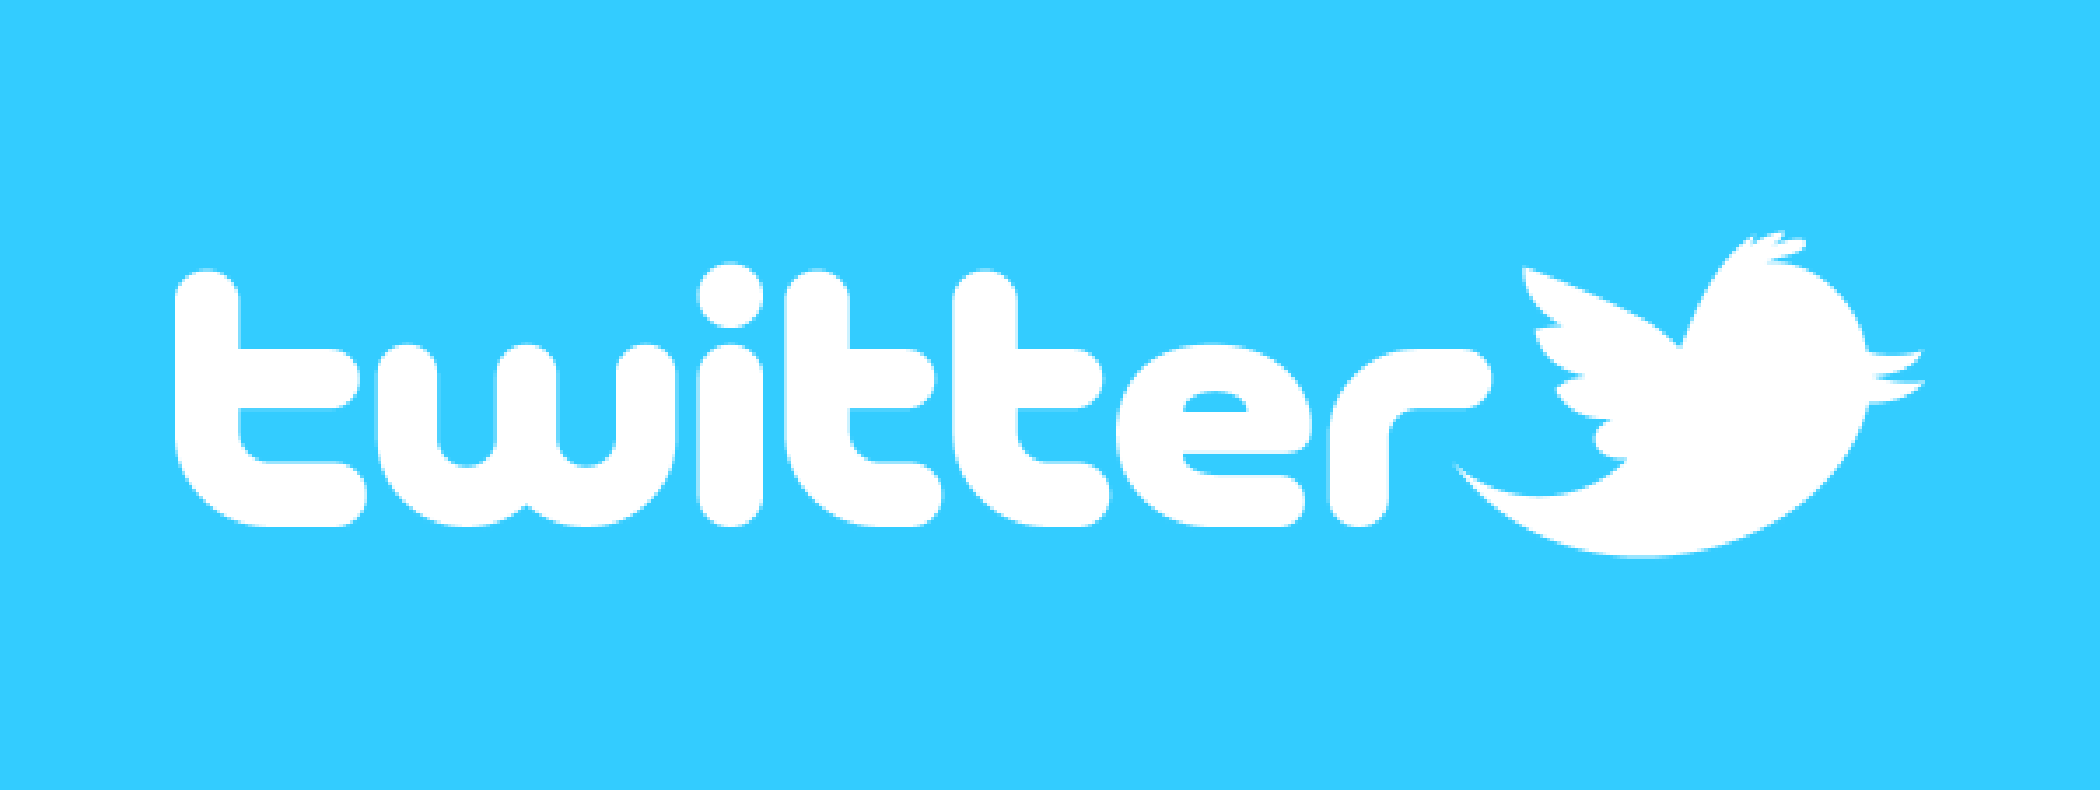 Twitter refuerza su área de análisis de datos en redes sociales